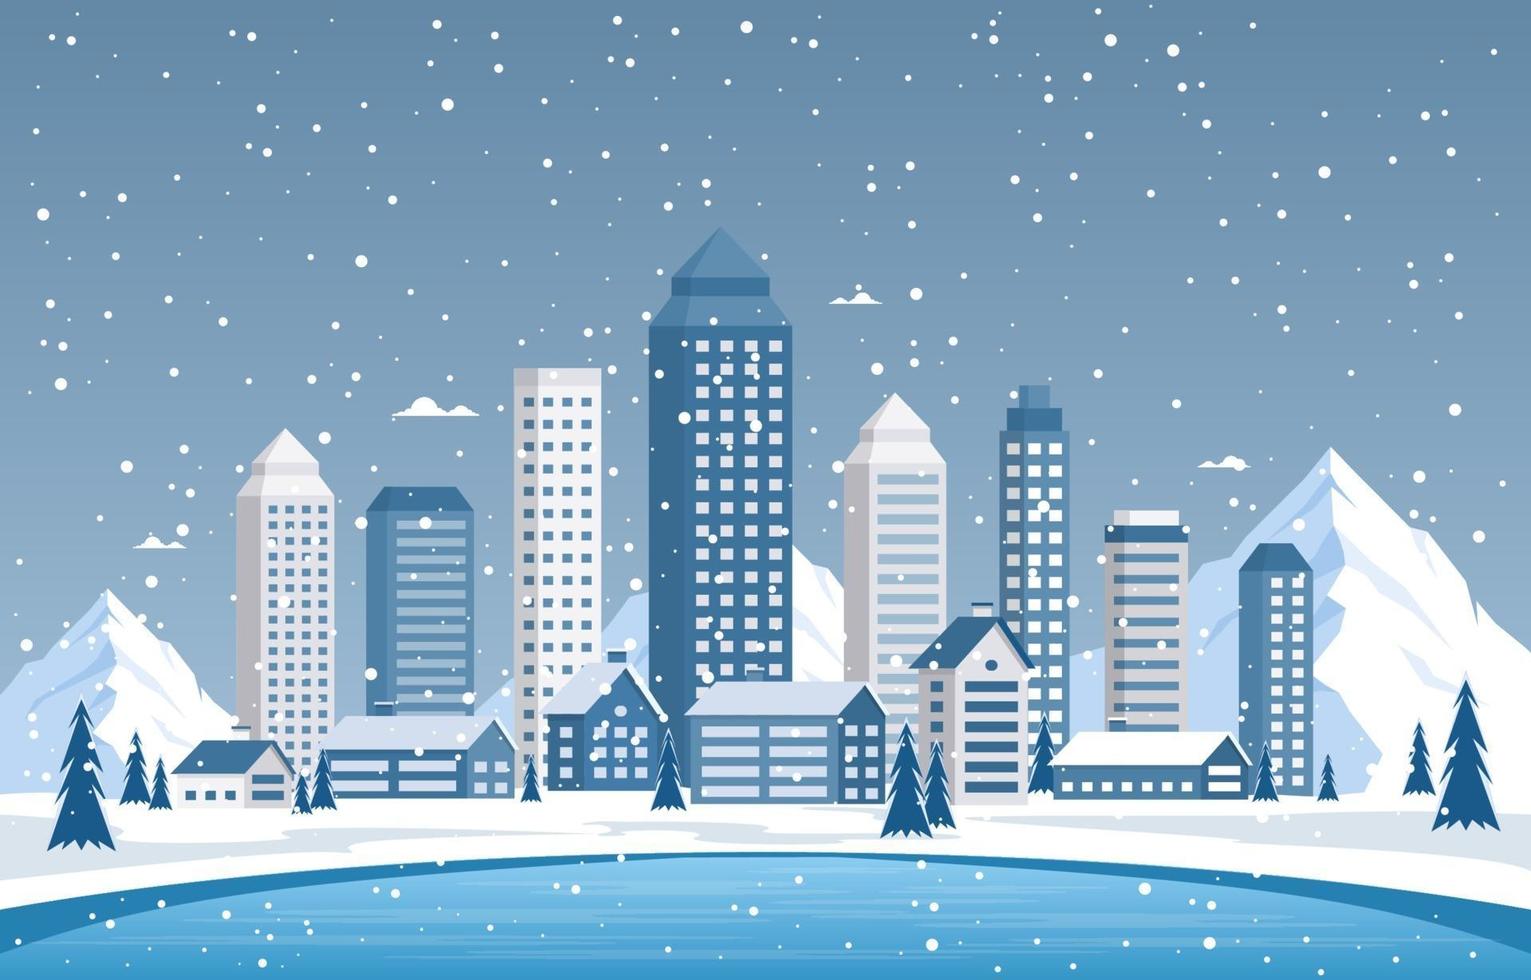 scène de ville d'hiver enneigée avec skyline, maisons et lac gelé vecteur